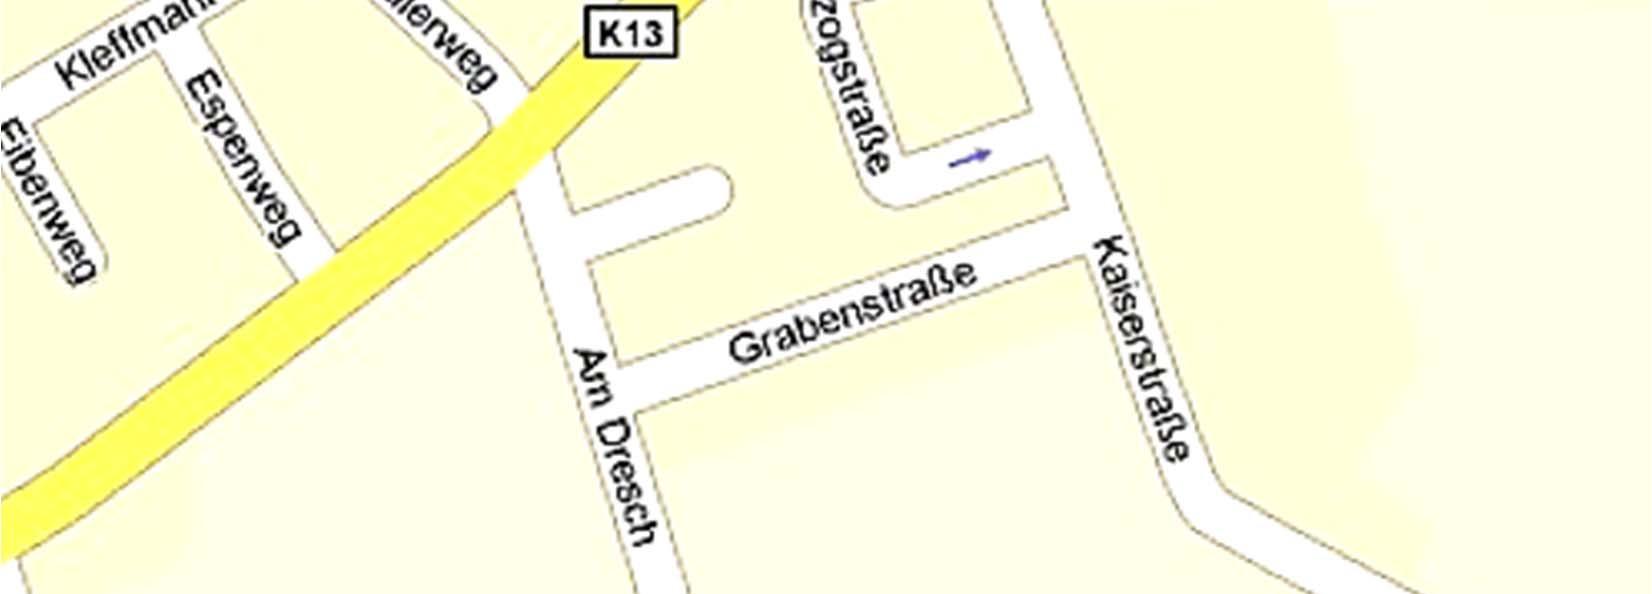 Ein evangelischer Kindergarten befindet sich im Fürstenweg 8, die